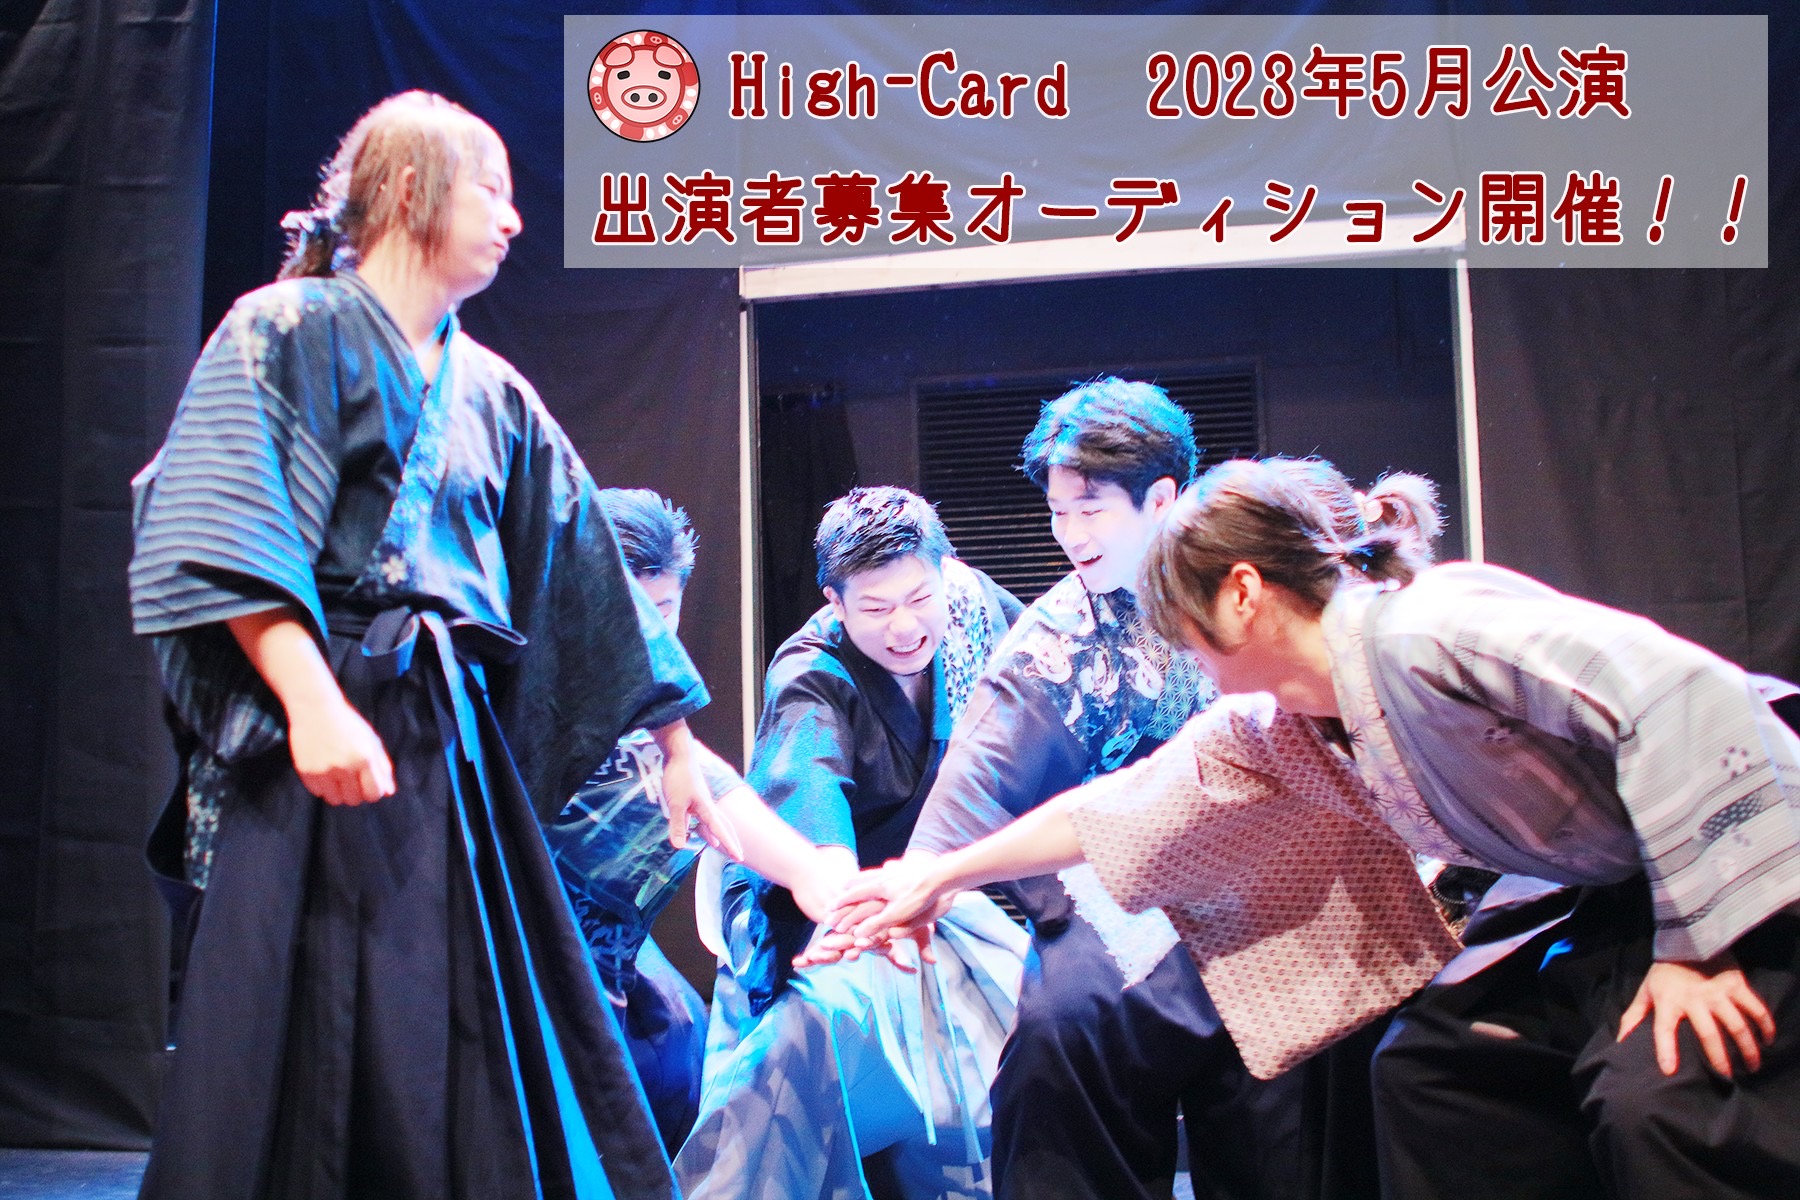 オーディション 2023年5月 High-Card新作公演 出演者募集 殺陣アクションあり。男女各数名募集。 主催：High-Card、カテゴリ：舞台